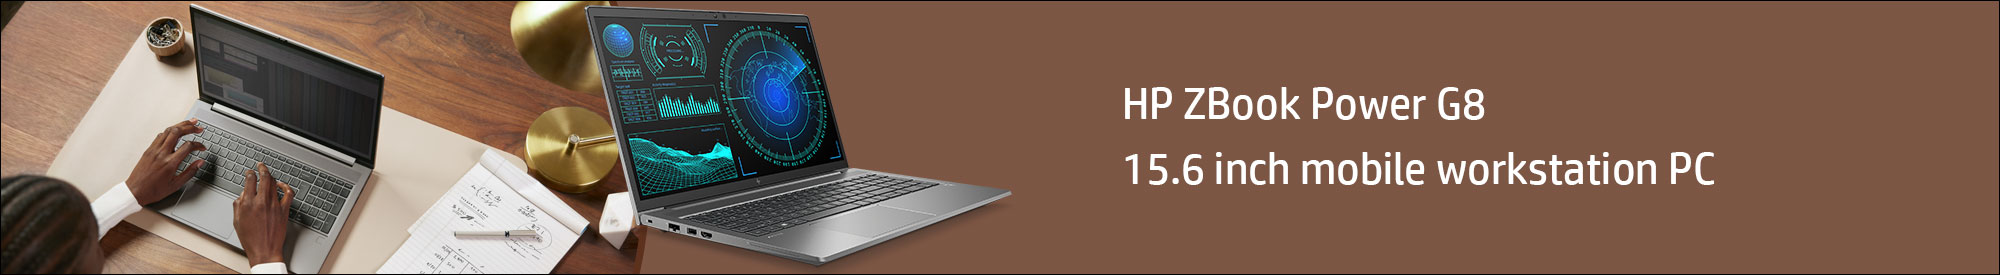 Buy HP Zbook Power G8 laptop in Bengaluru